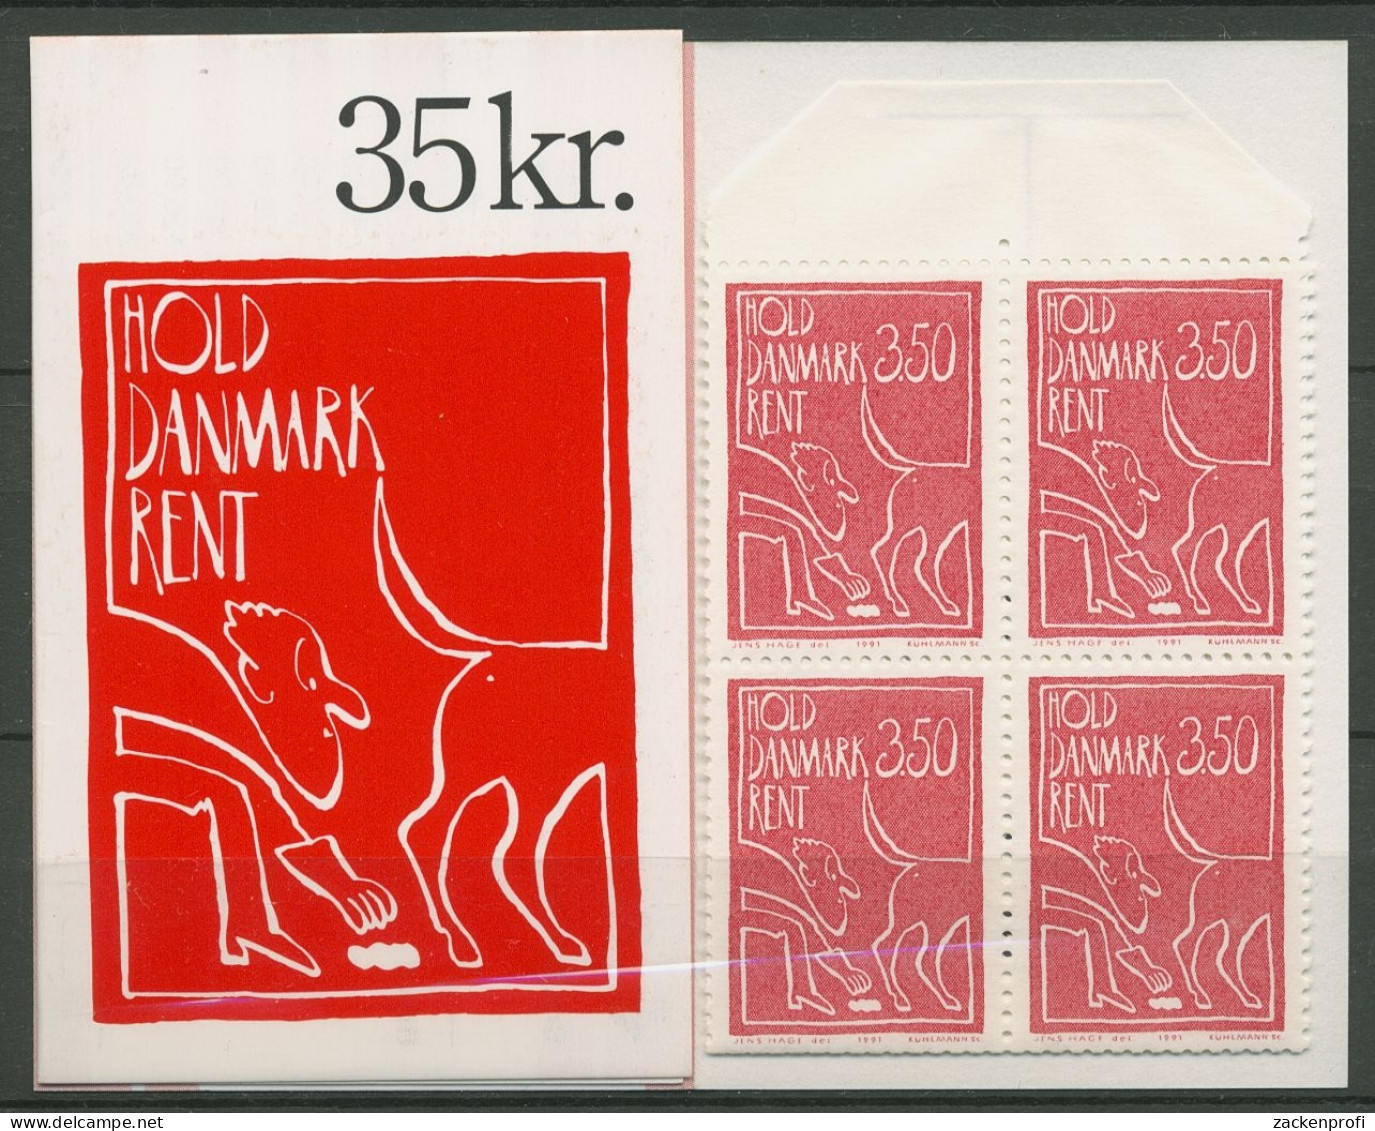 Dänemark 1991 Sauberes Dänemark Markenheftchen 1010 MH Postfrisch (C93041) - Booklets